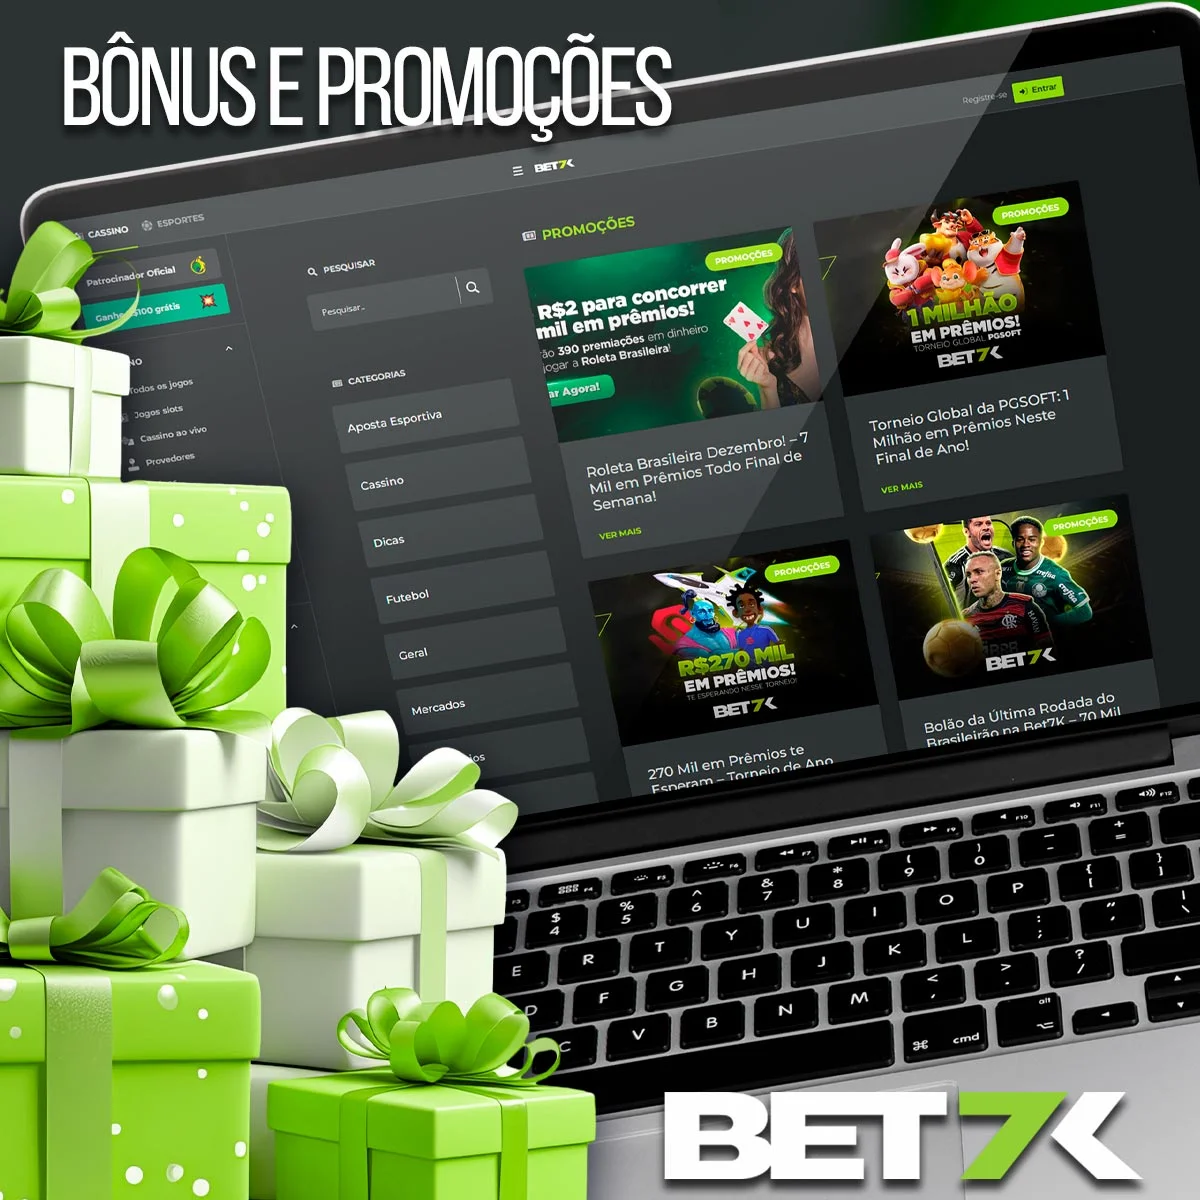 Visão geral do programa de bônus da casa de apostas Bet7k no Brasil